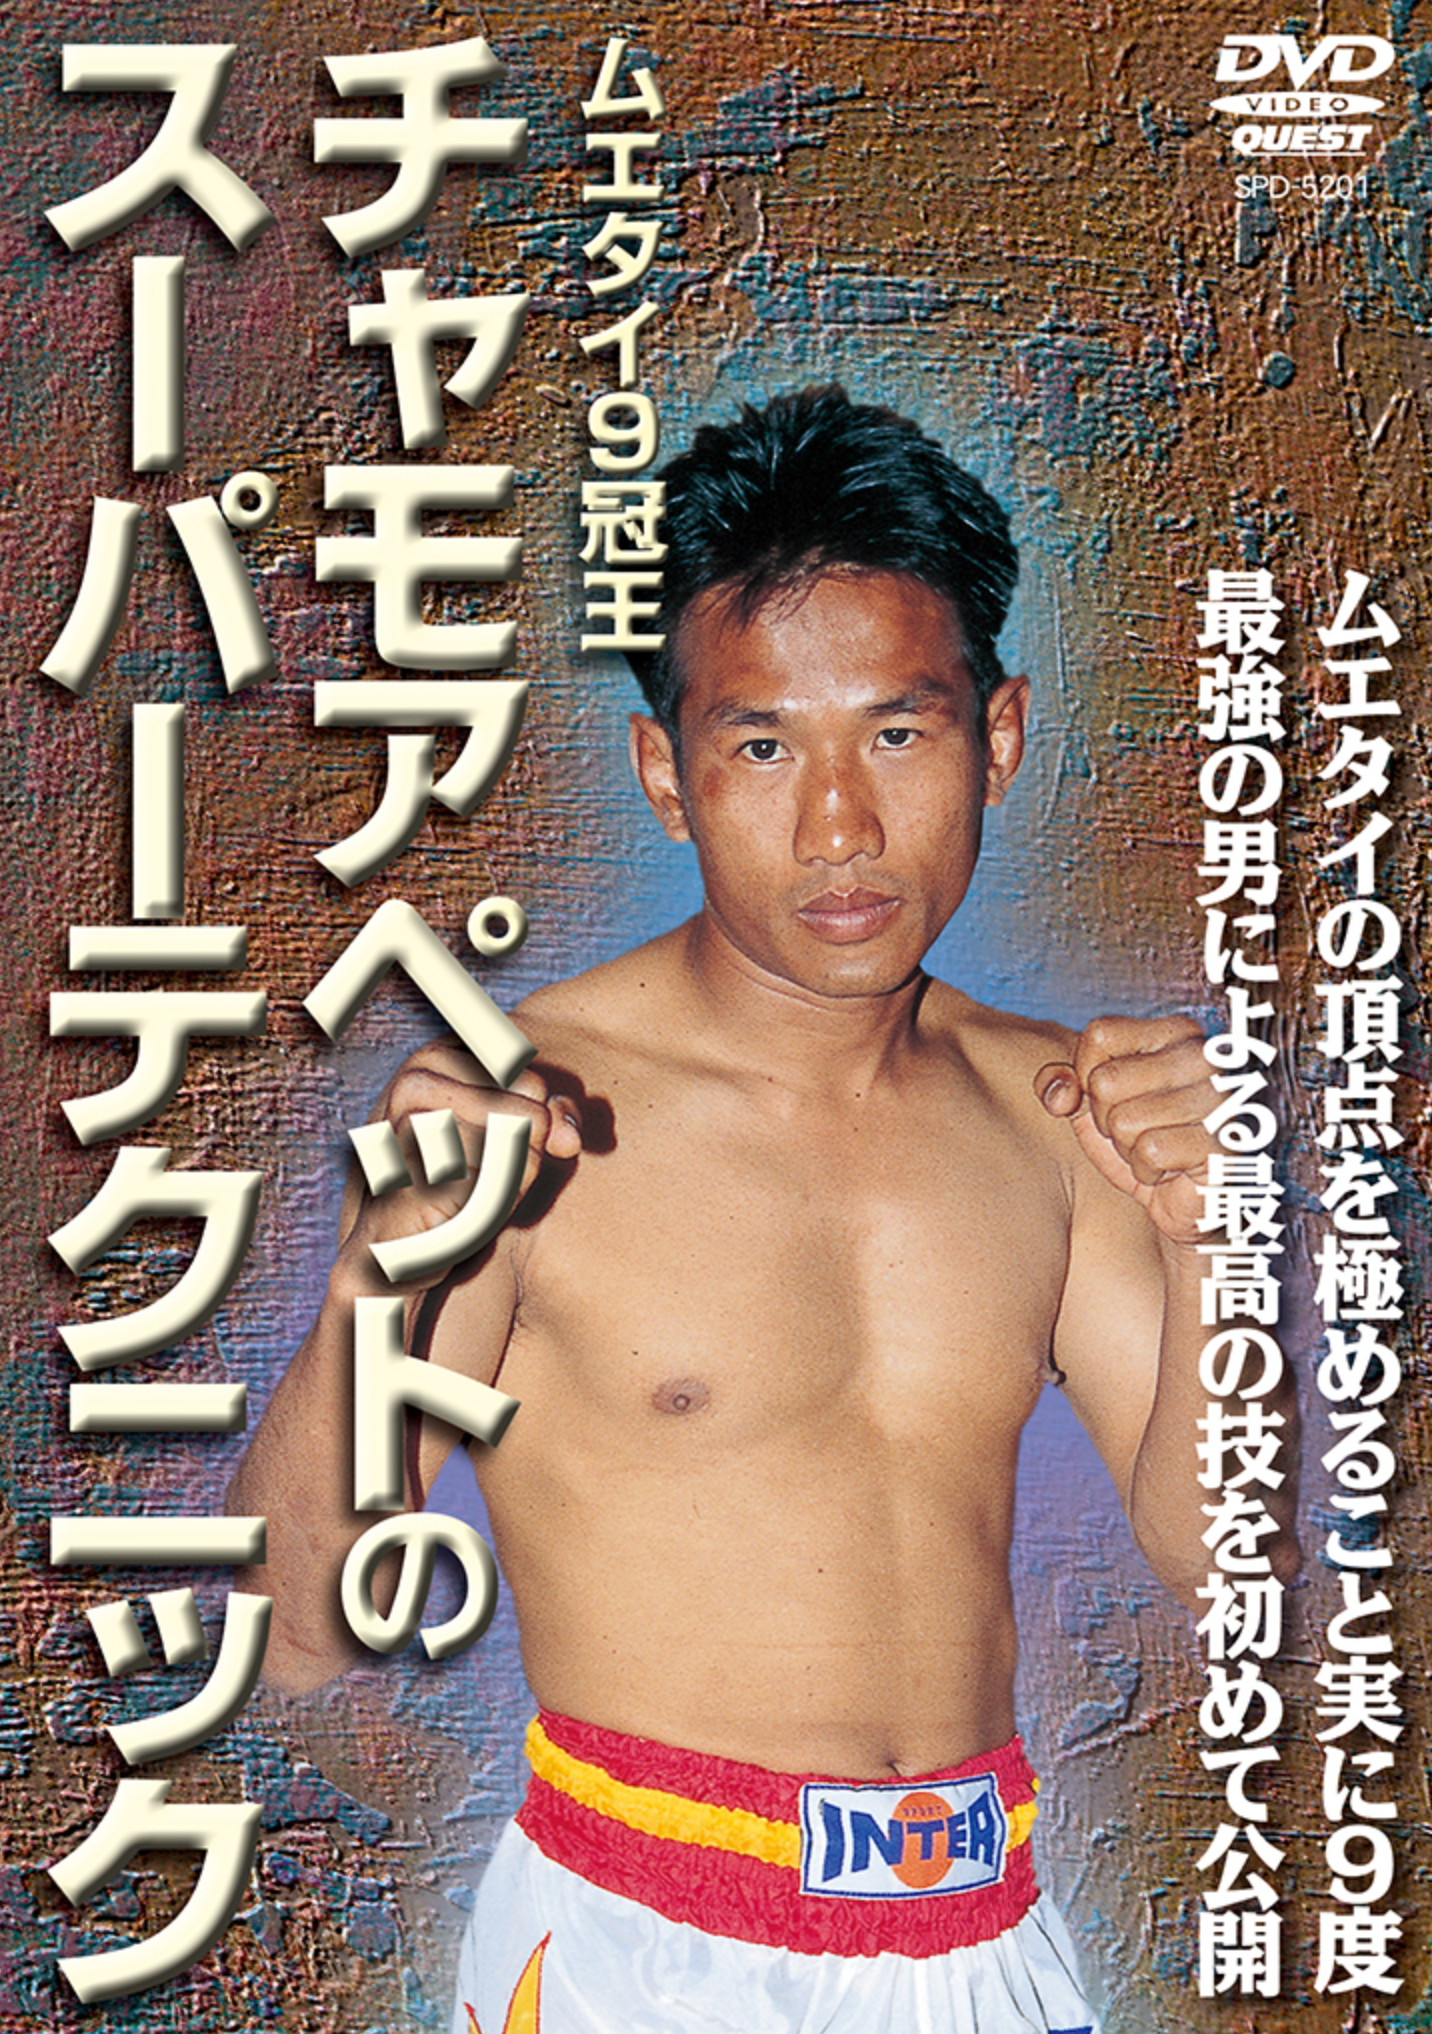 Super Muay Thai Techniques Vol 1 DVD - Budovideos Inc